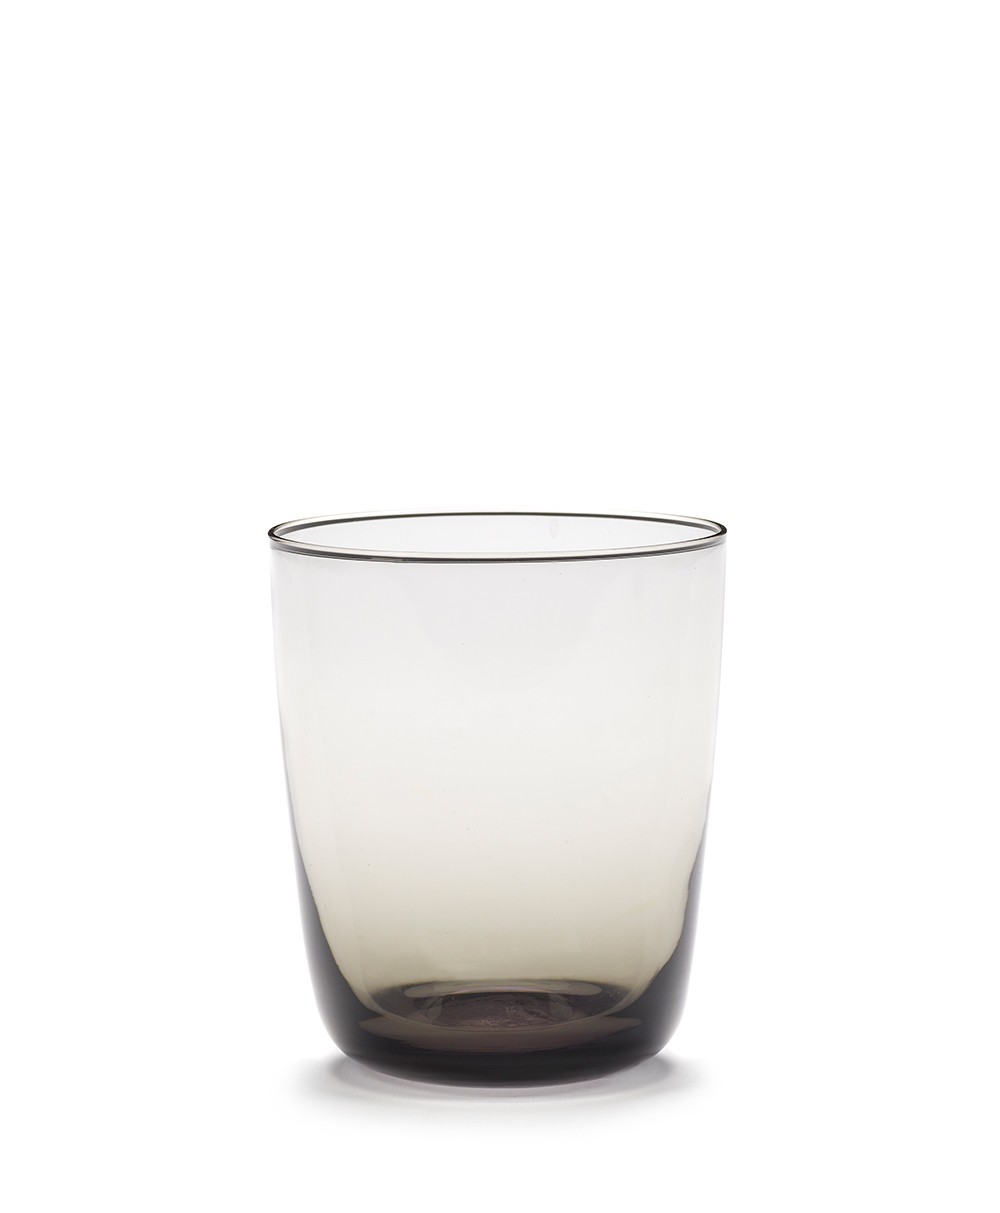 Das Wasserglas CENA in smoky grey von Serax aus der Kollektion von Vincent Van Duysen im RAUM concept store